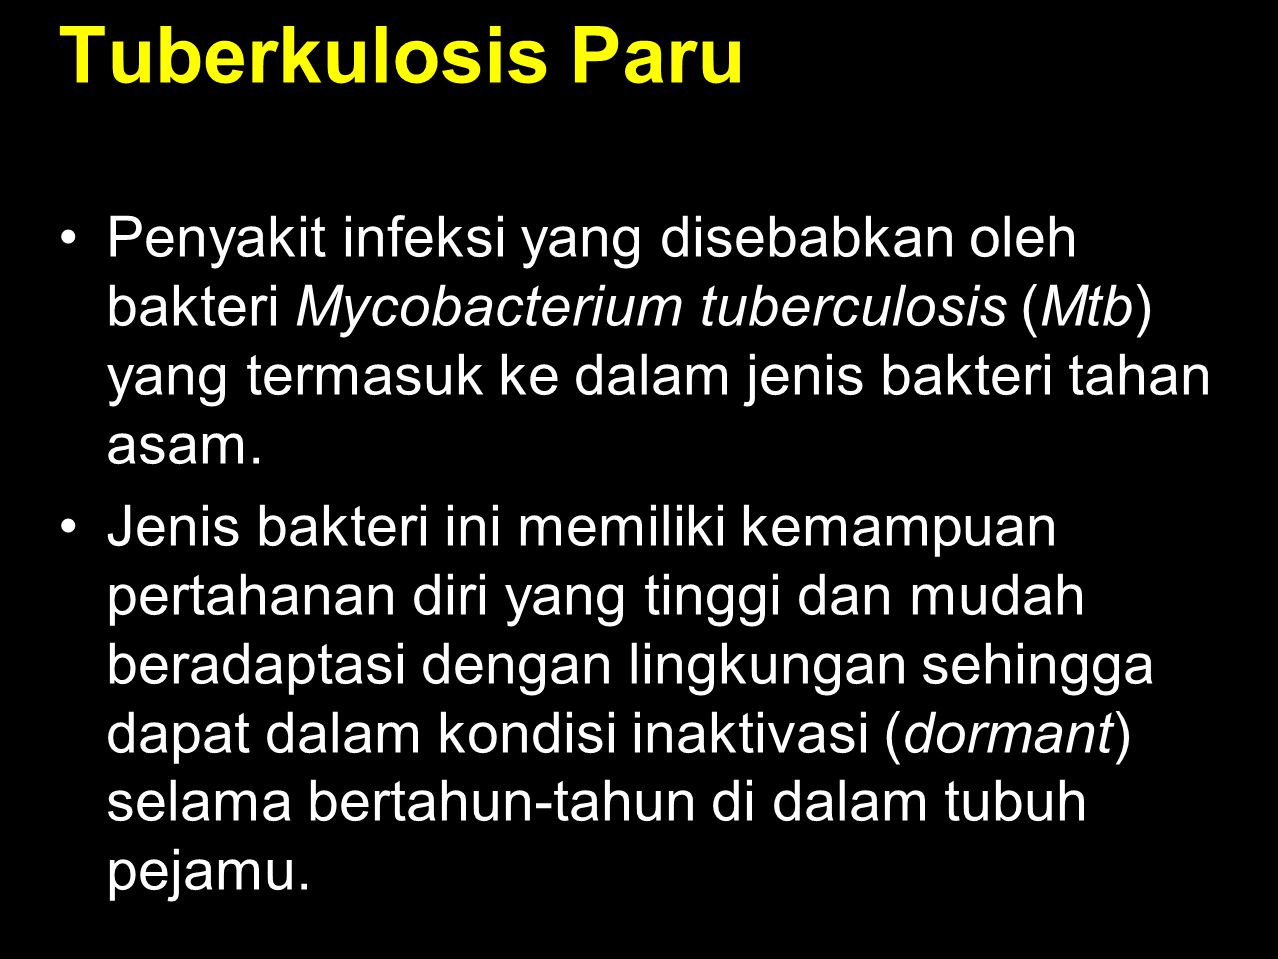 Tuberkulosis Paru Penyakit infeksi yang disebabkan oleh bakteri Mycobacterium tuberculosis (Mtb) yang termasuk ke dalam jenis bakteri tahan asam.